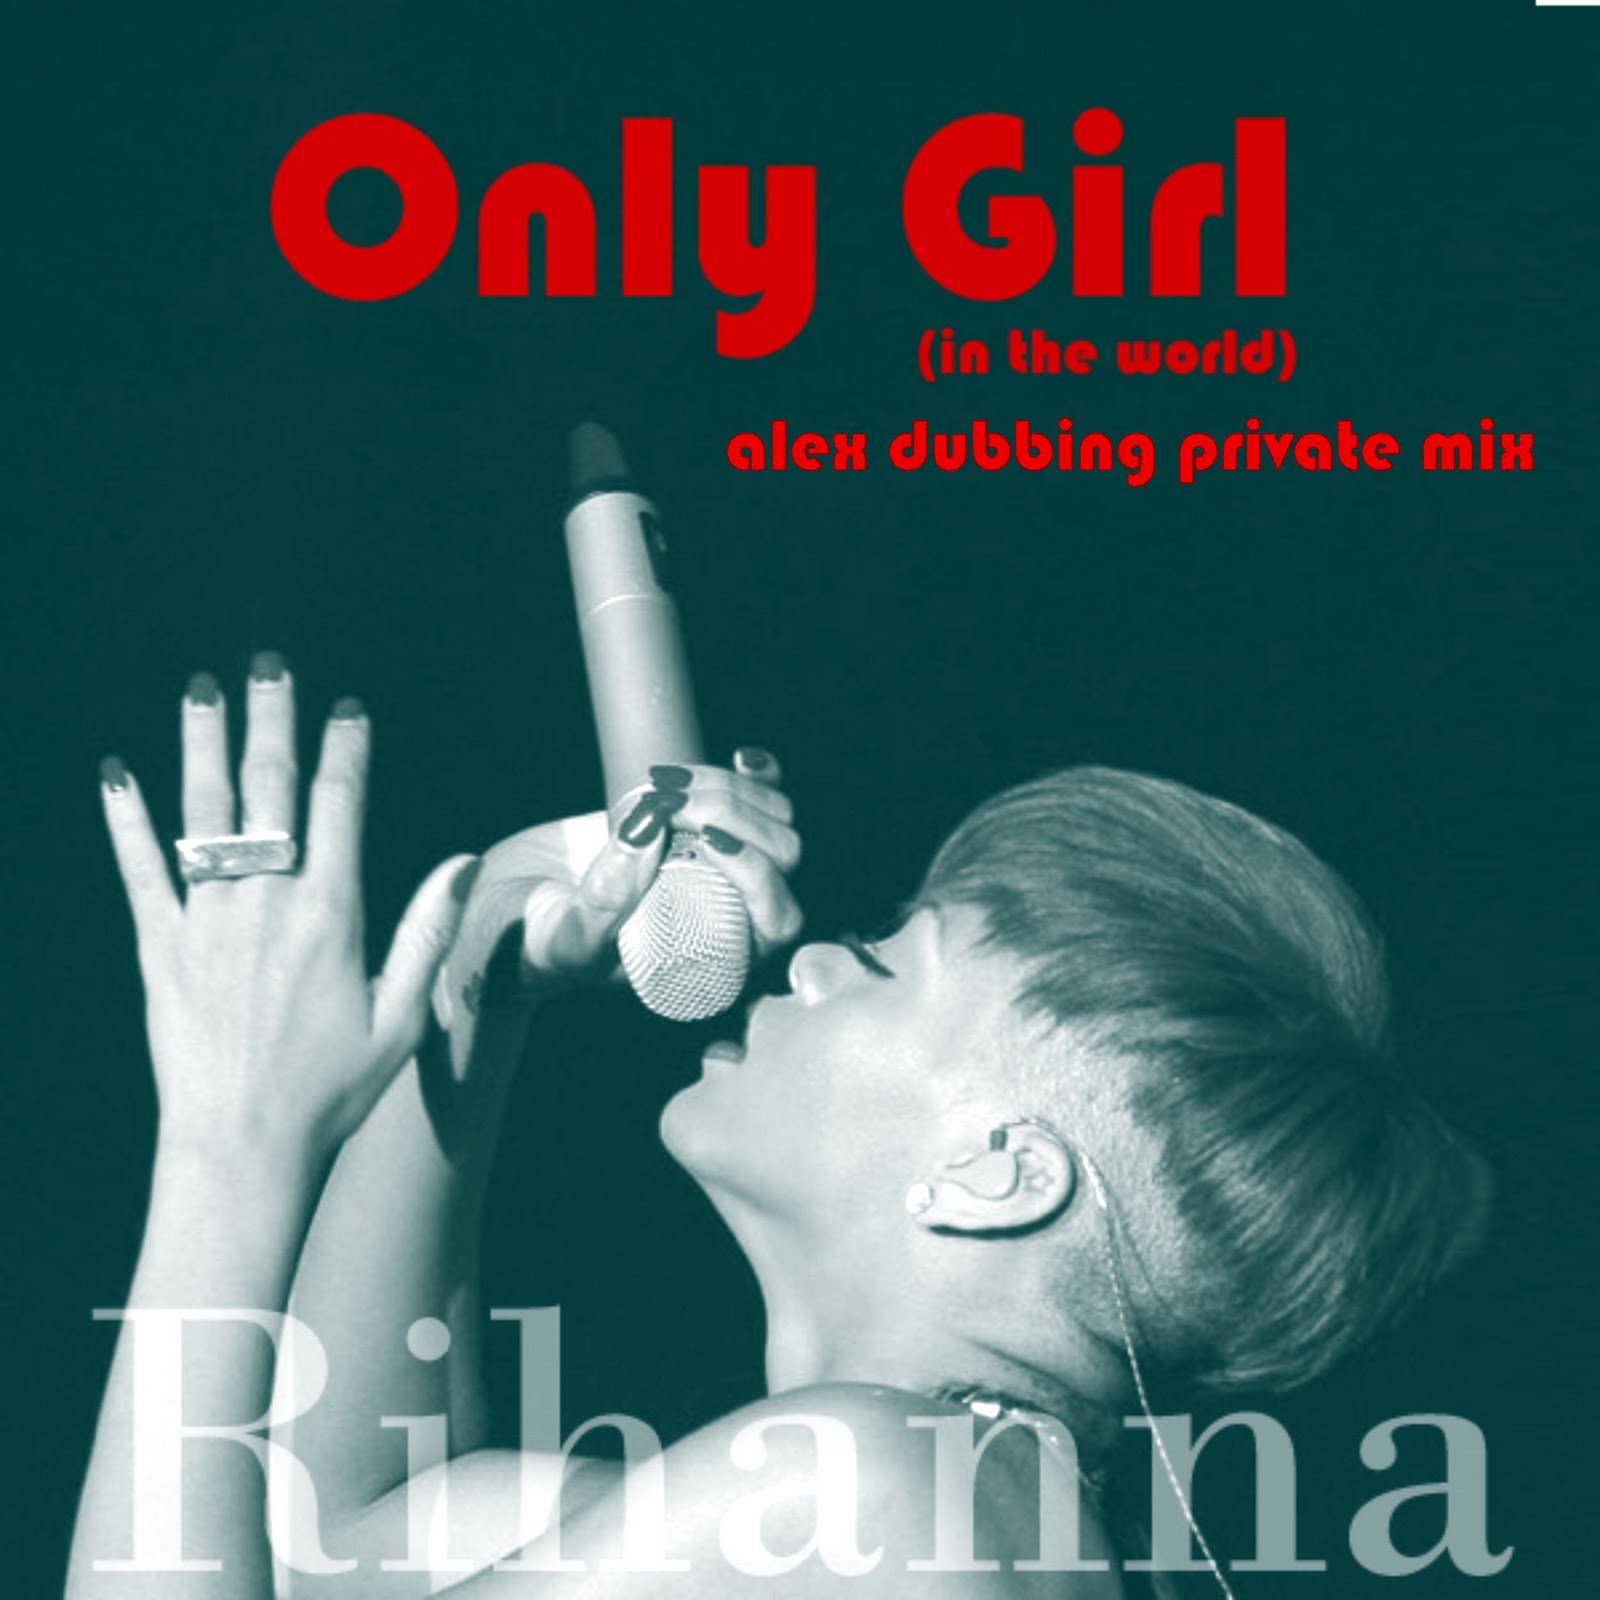 http://3.bp.blogspot.com/_yZXE5uoRM3A/TI21LIXXAaI/AAAAAAAAAFM/7uI2r7jxZY4/s1600/Rihanna+-+Only+Girl+%28In+The+World%29.jpg